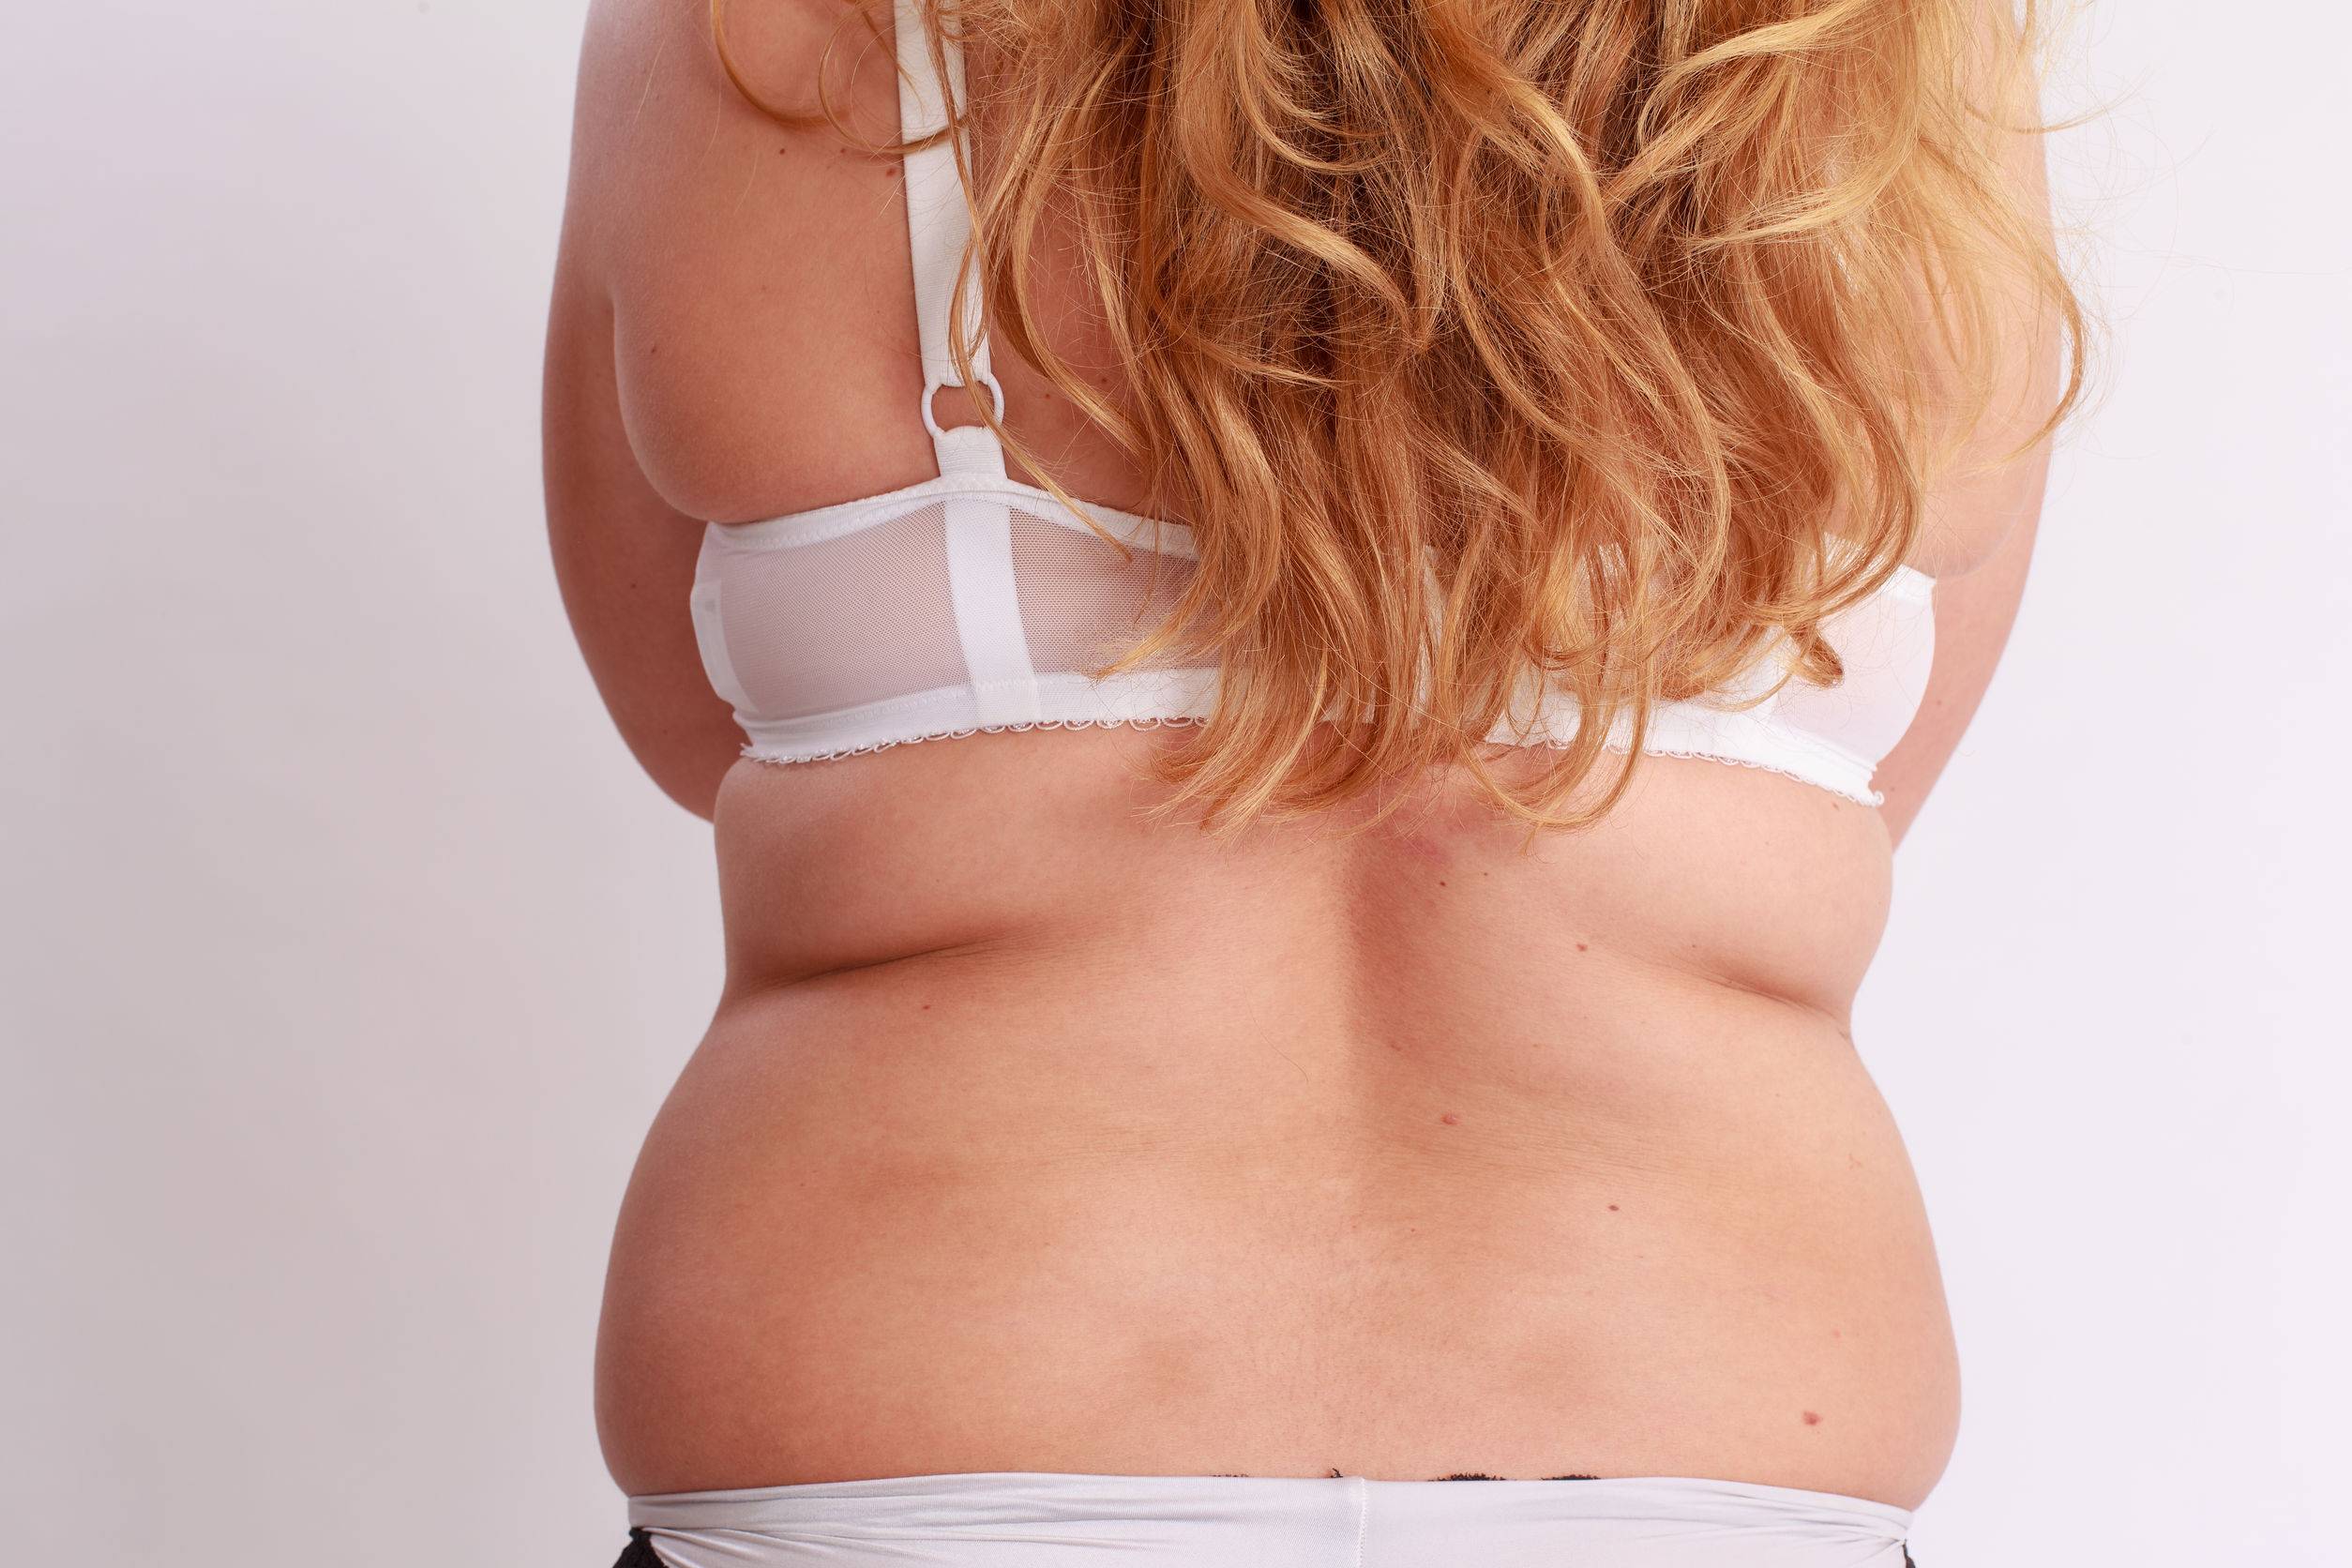 Szereted a duci csajokat? - Tények és tévhitek a kövér nő fétissel kapcsolatban